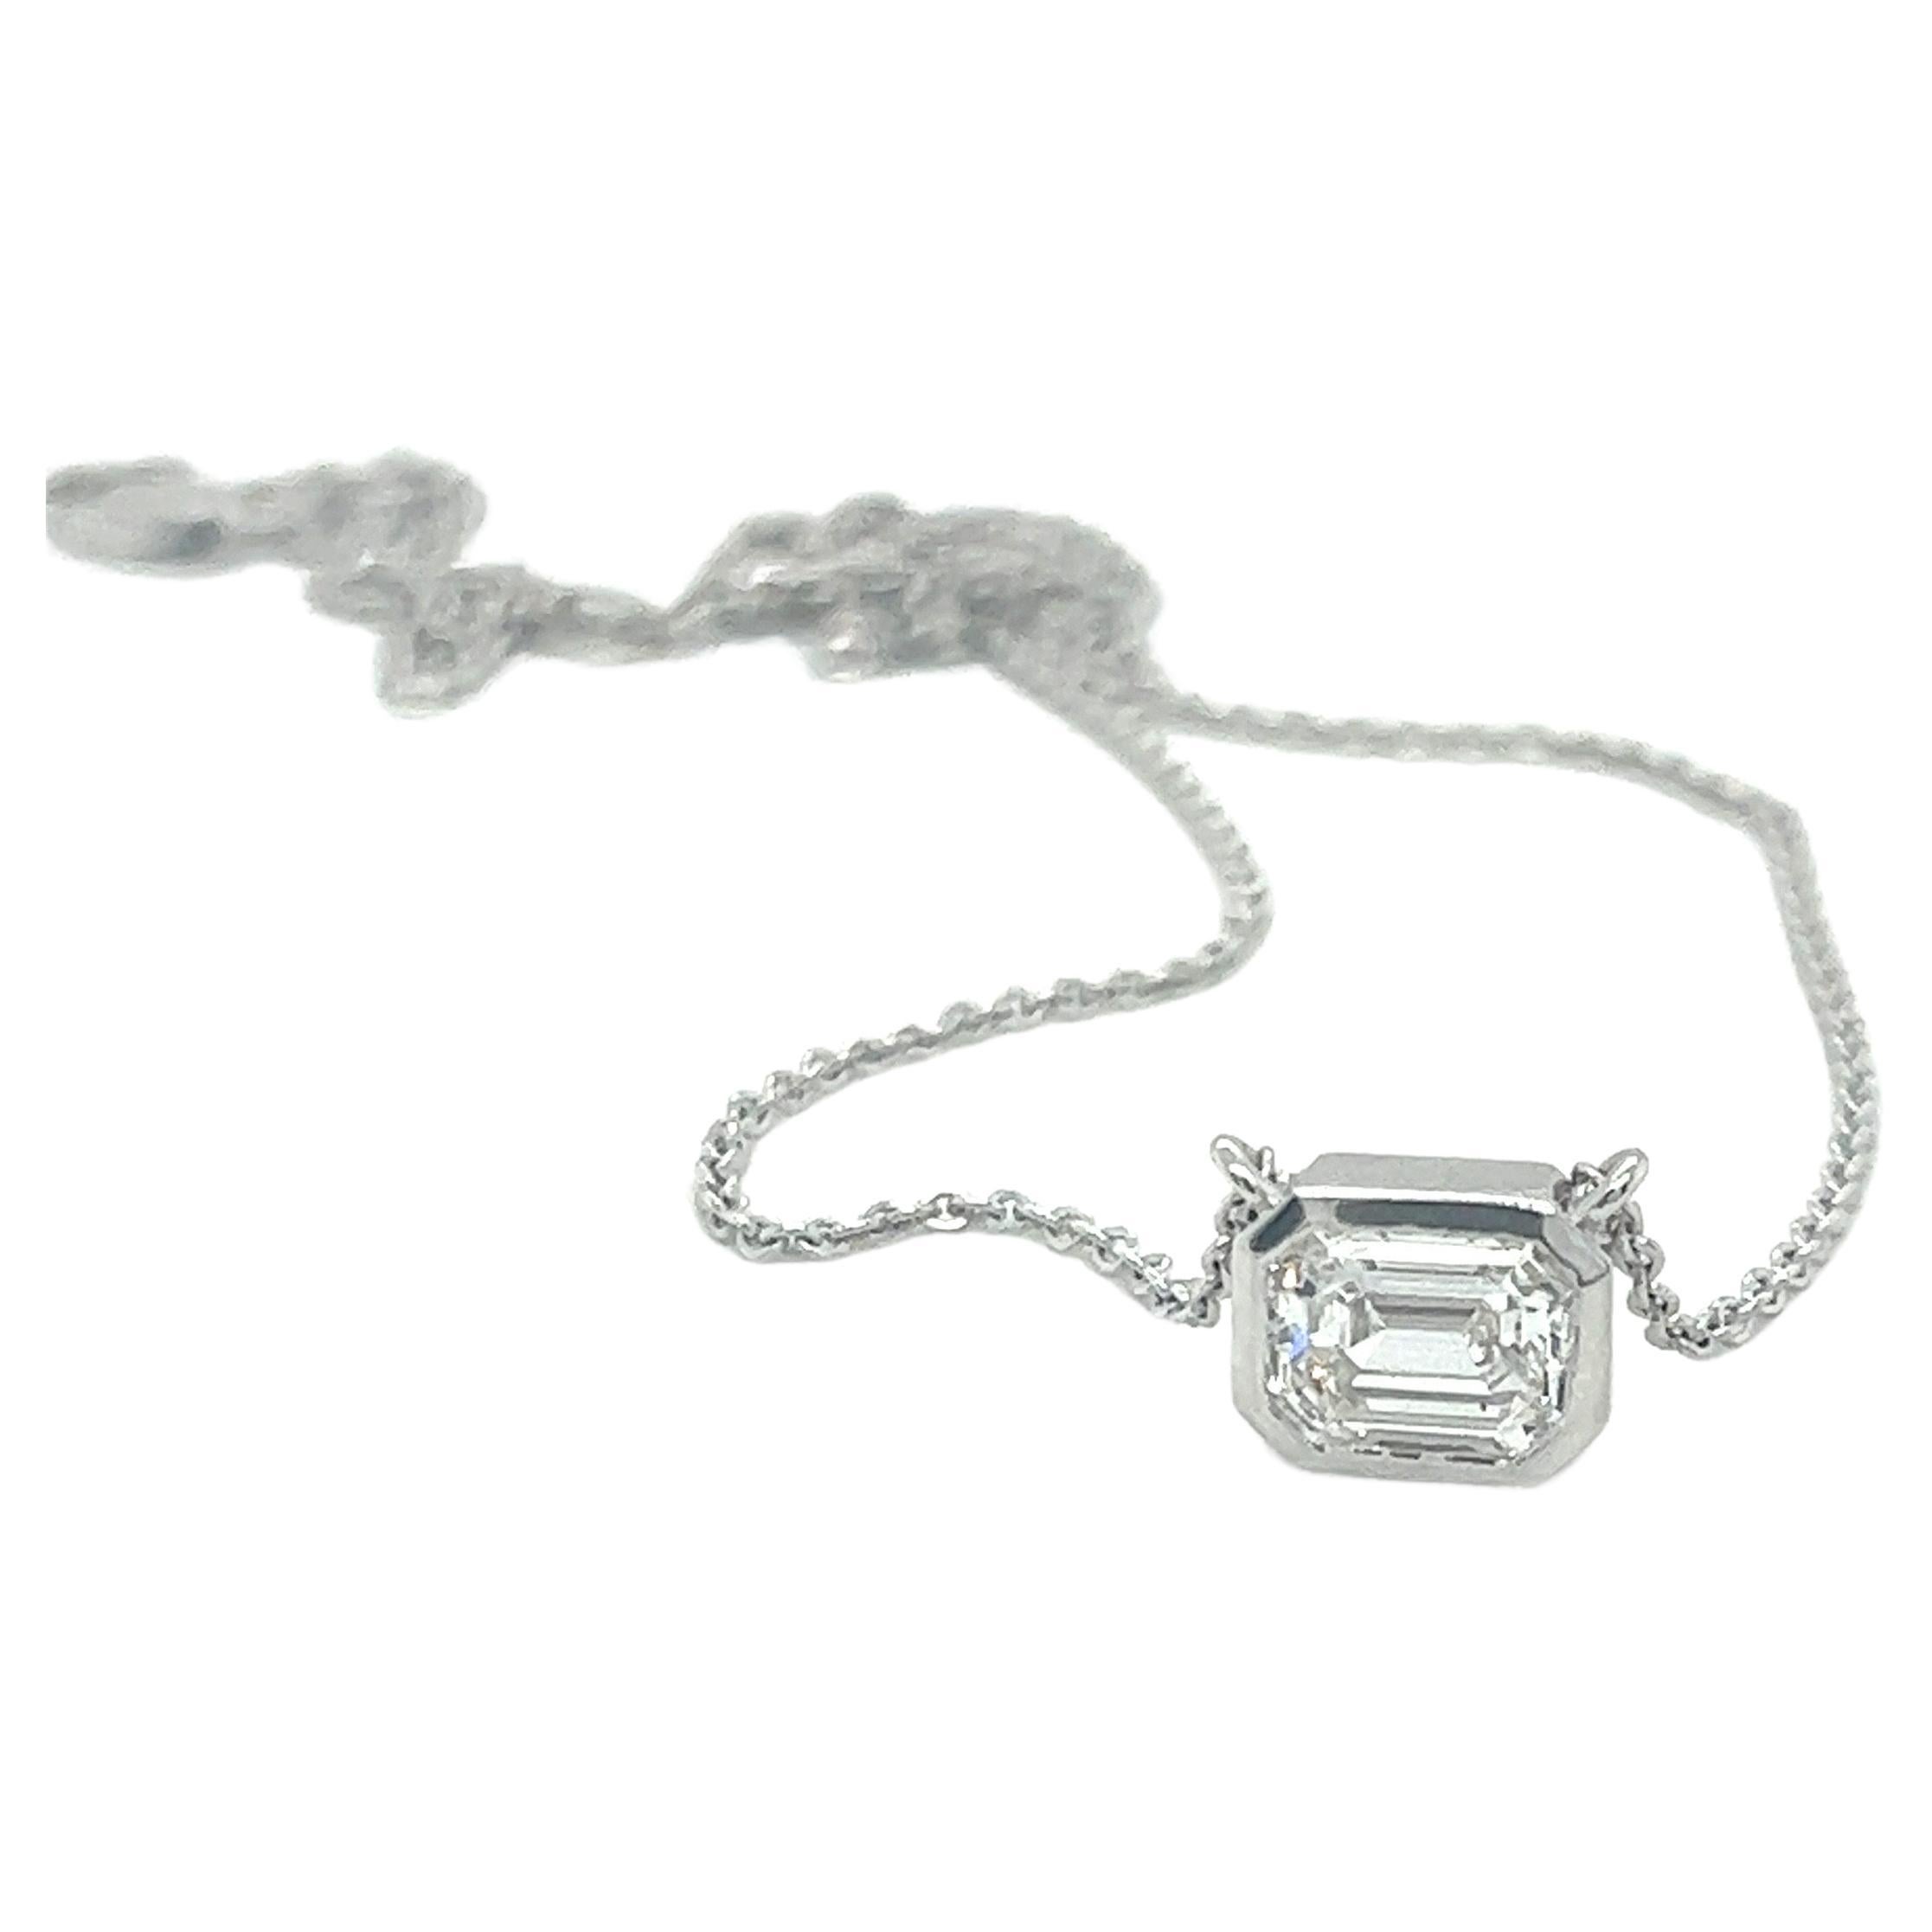 1.01 Carat F Color VS1 Emerald Cut Diamond Necklace